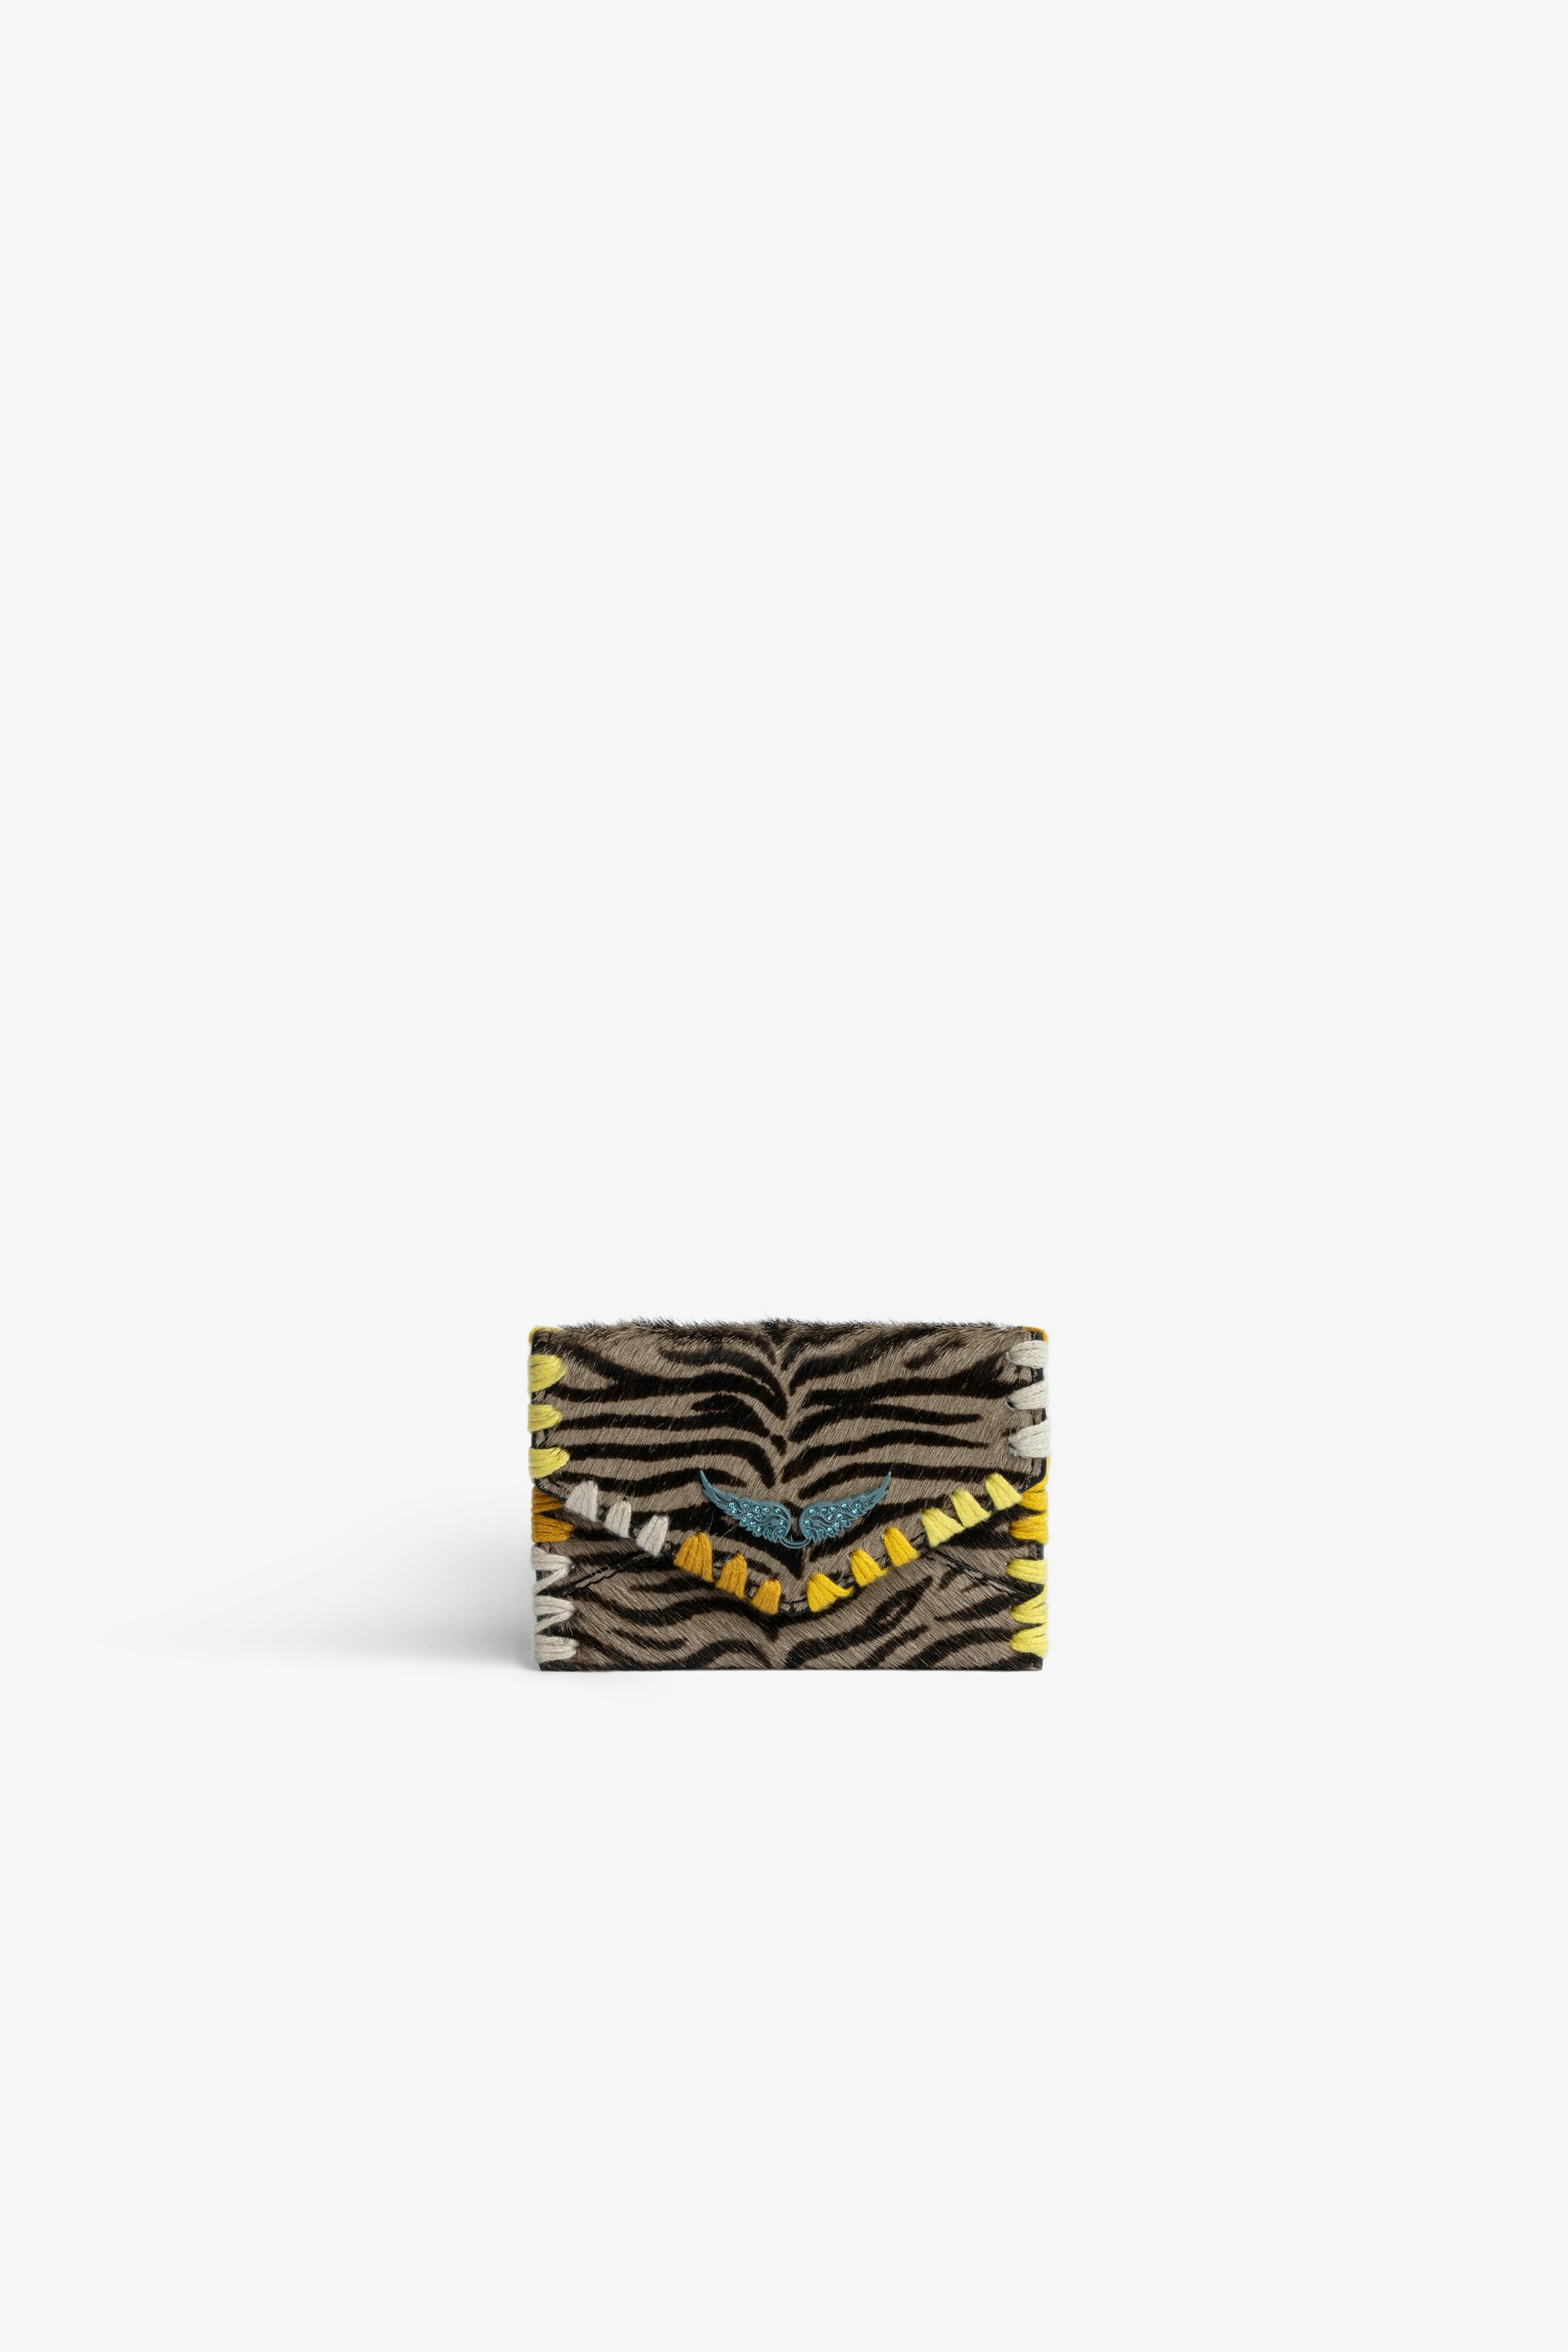 Pochette Enveloppe Pochette Enveloppe in pelle effetto zebra color talpa con ricami a contrasto 